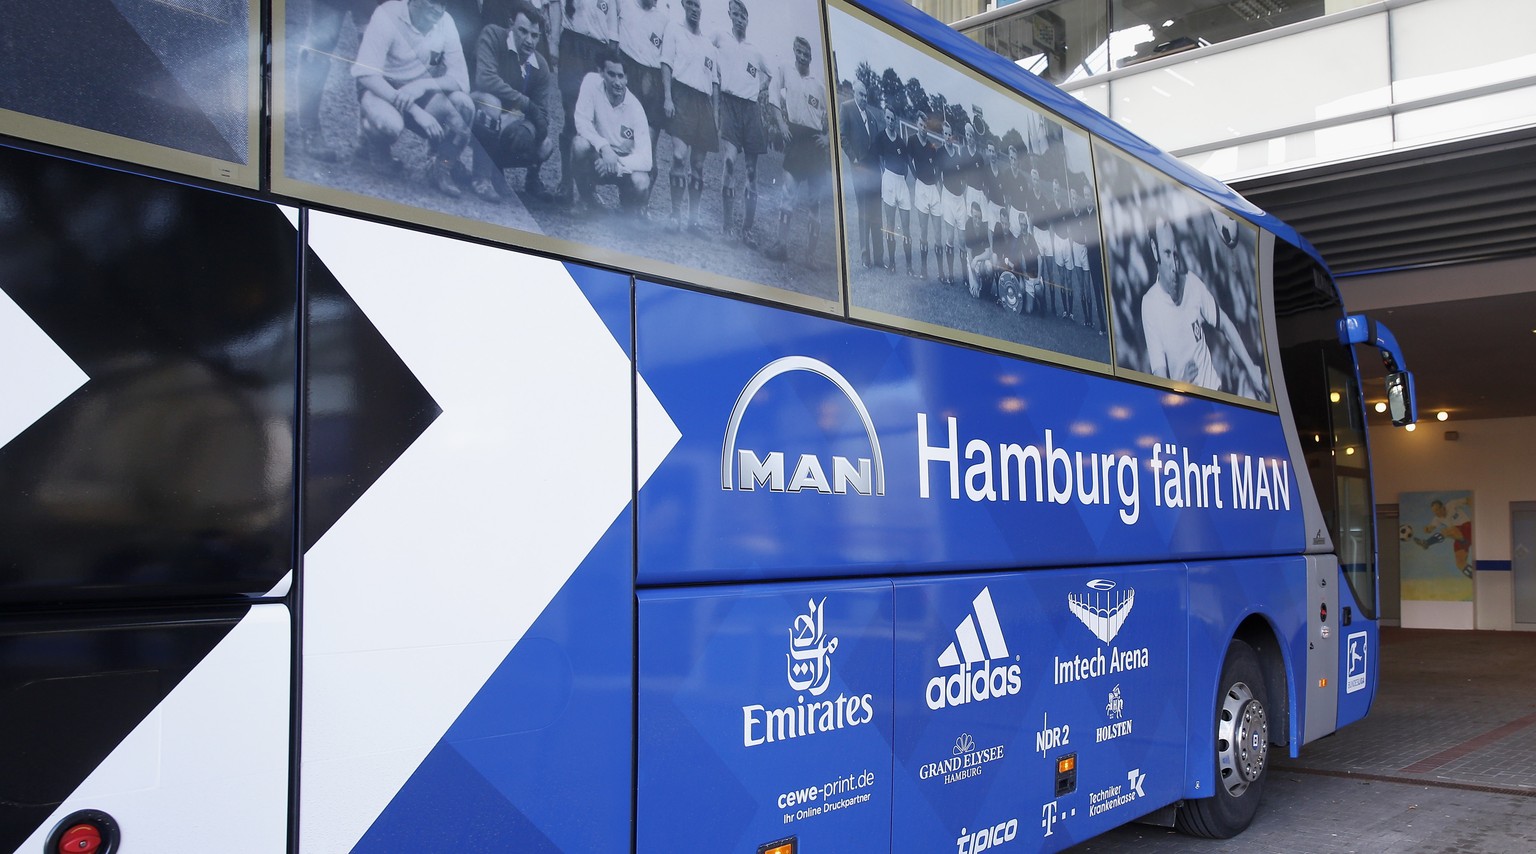 «Hamburg fährt MAN» – so war der Mannschaftsbus in der letzten Saison beschriftet.